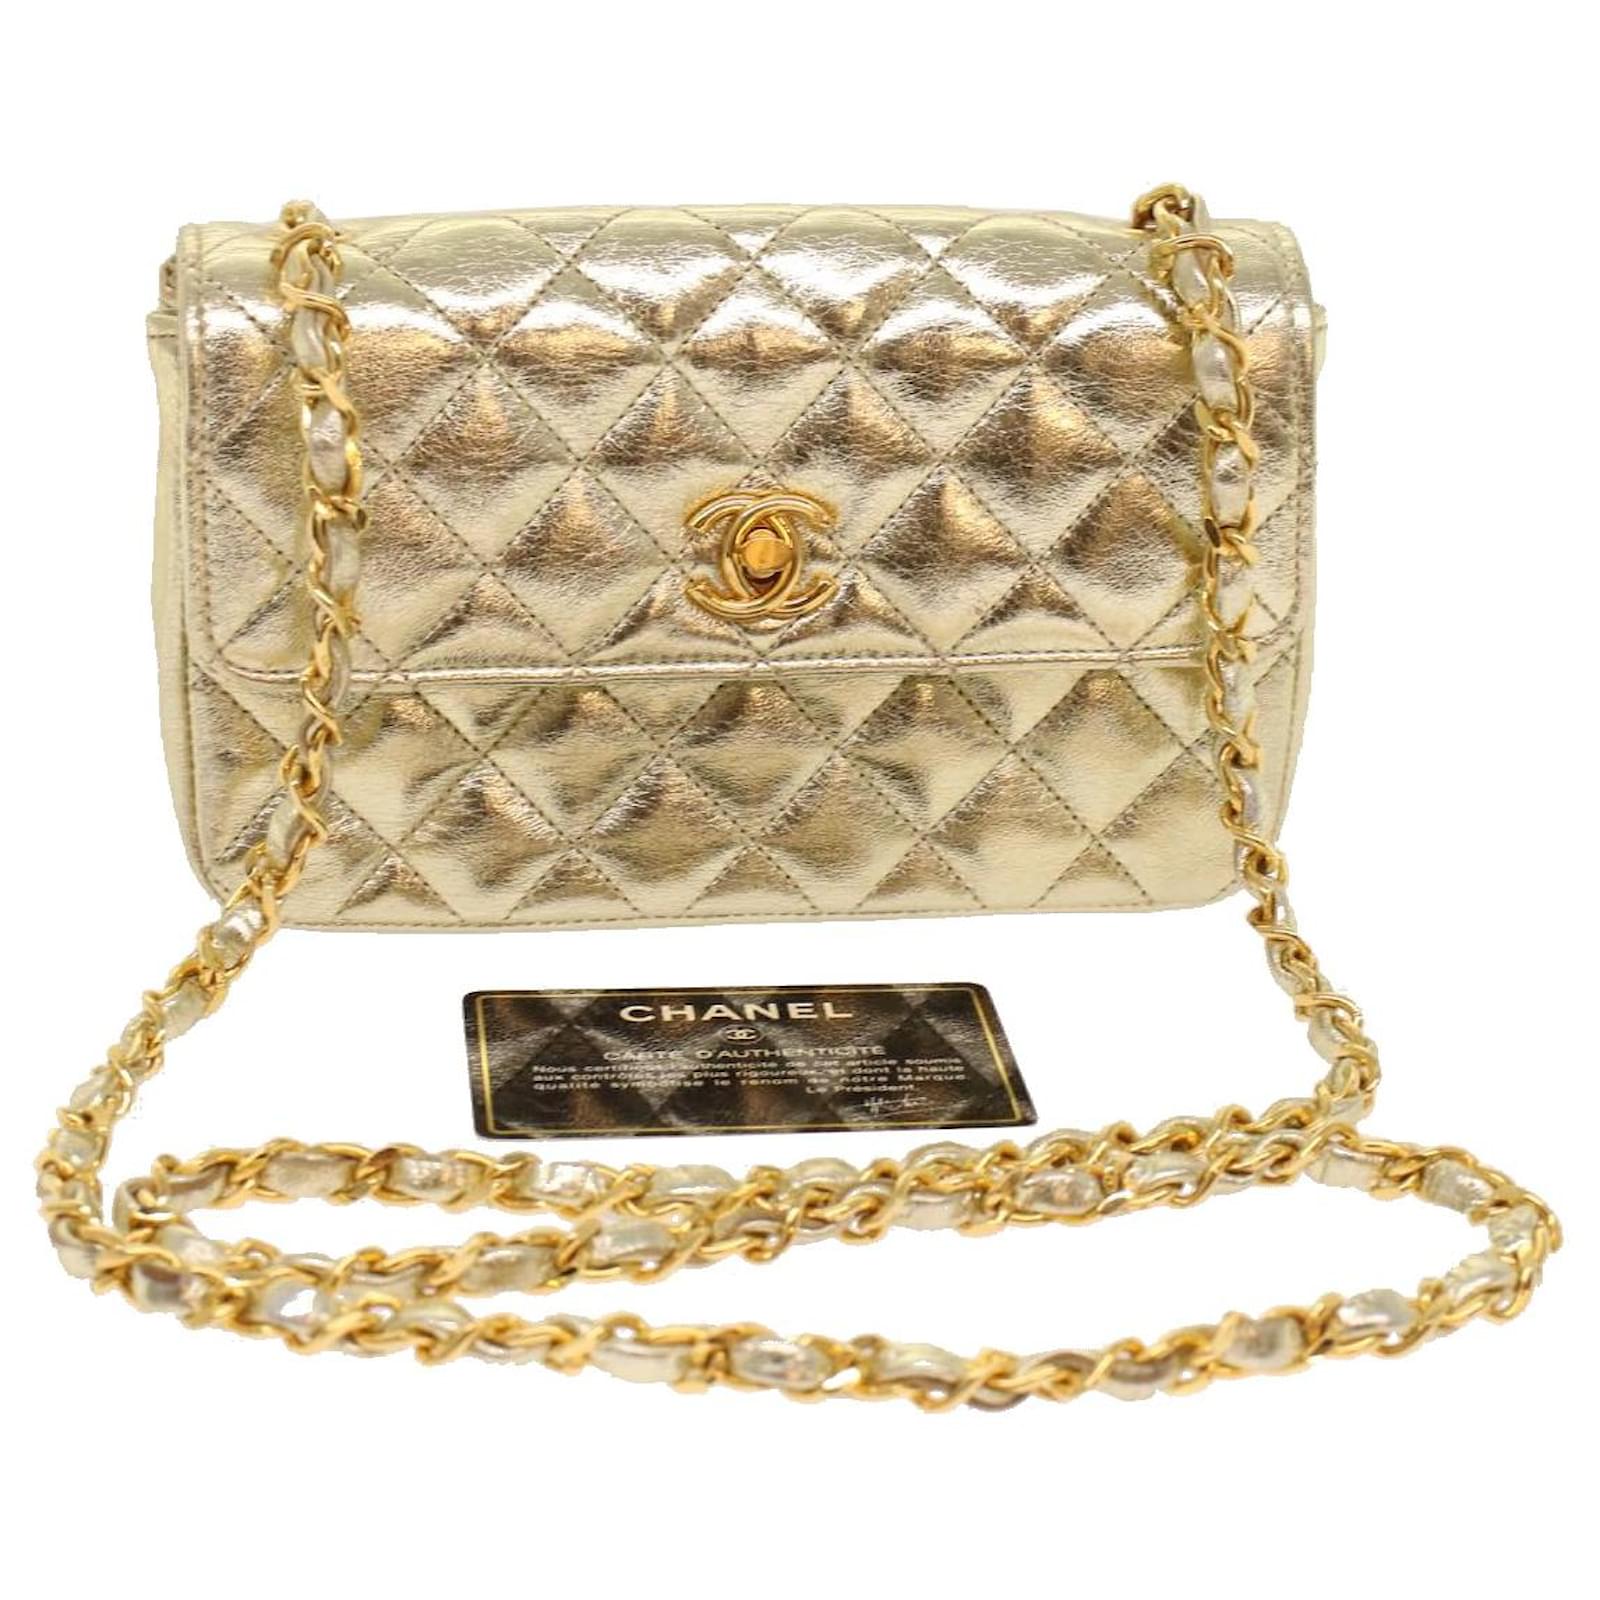 Chanel Diana 25 Matelasse Chain Shoulder Bag Caviar Skin Beige A01165  Vintage Matelasse Bag